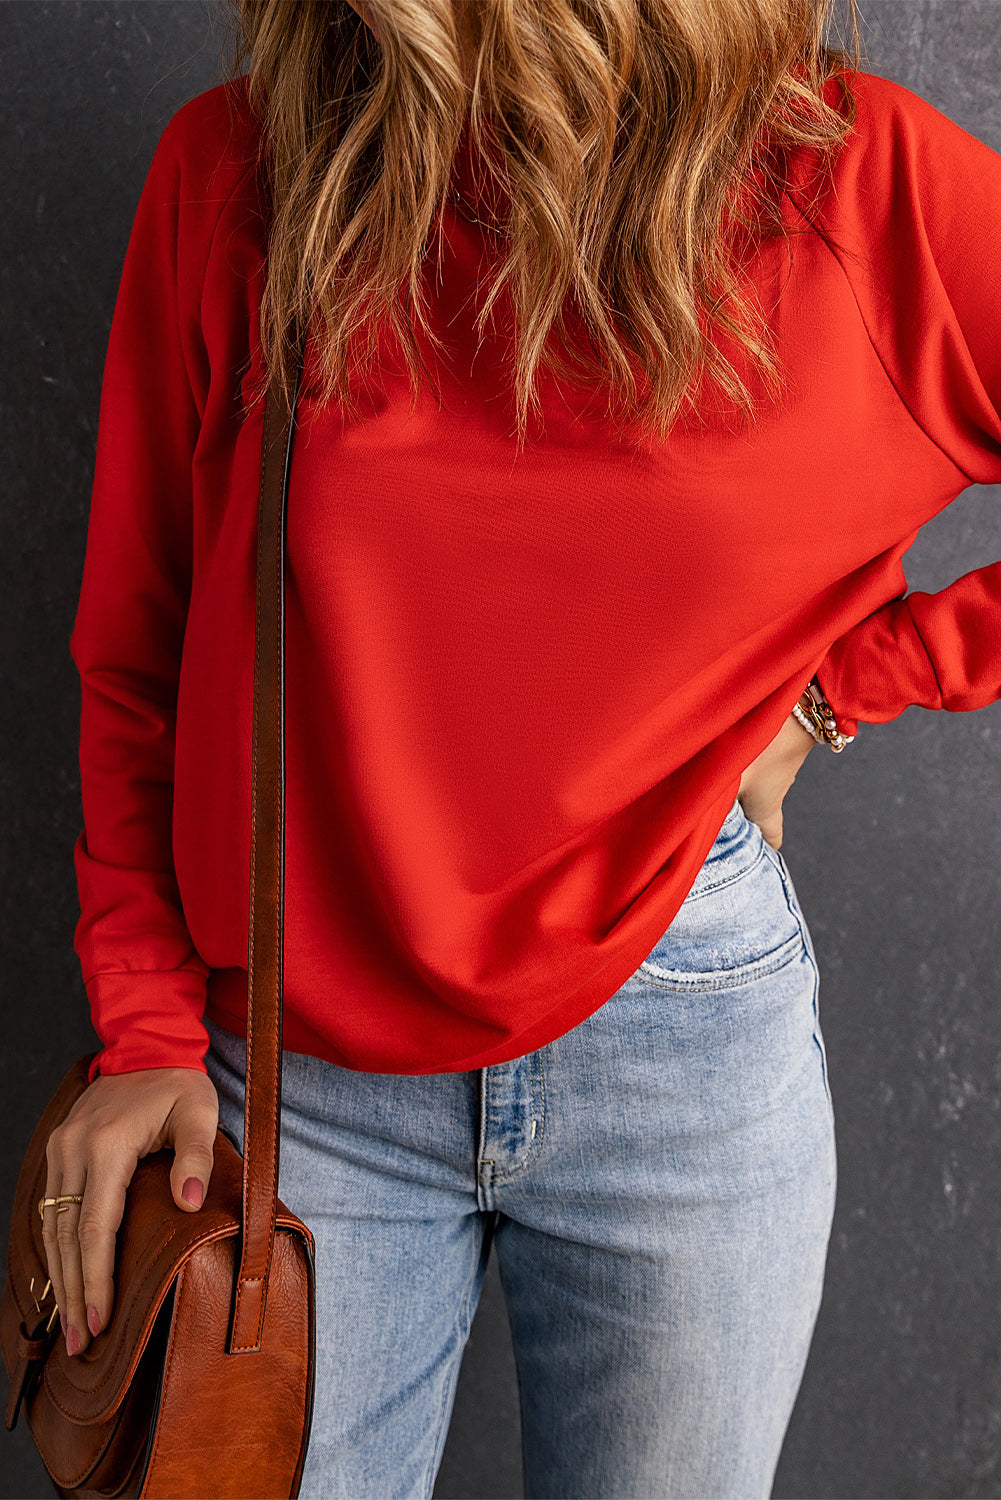 Ognjeno rdeč enobarvni pulover z okroglim izrezom